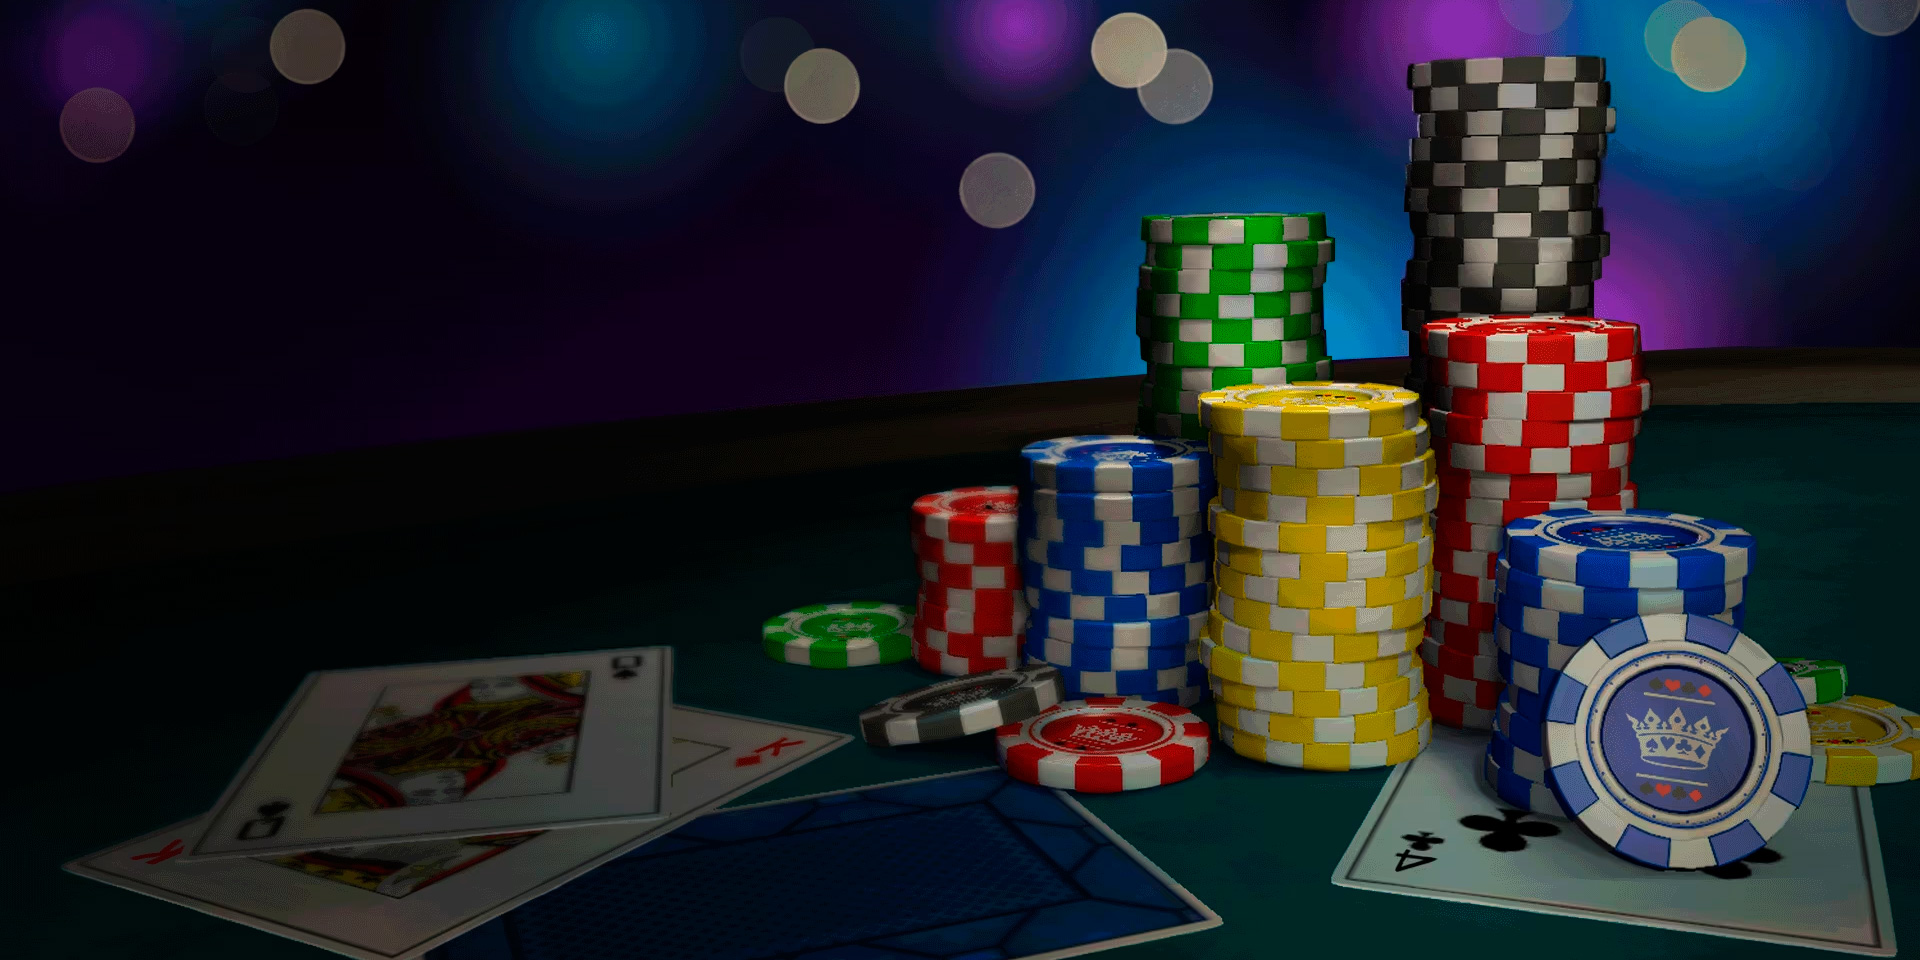 Modern online casinos